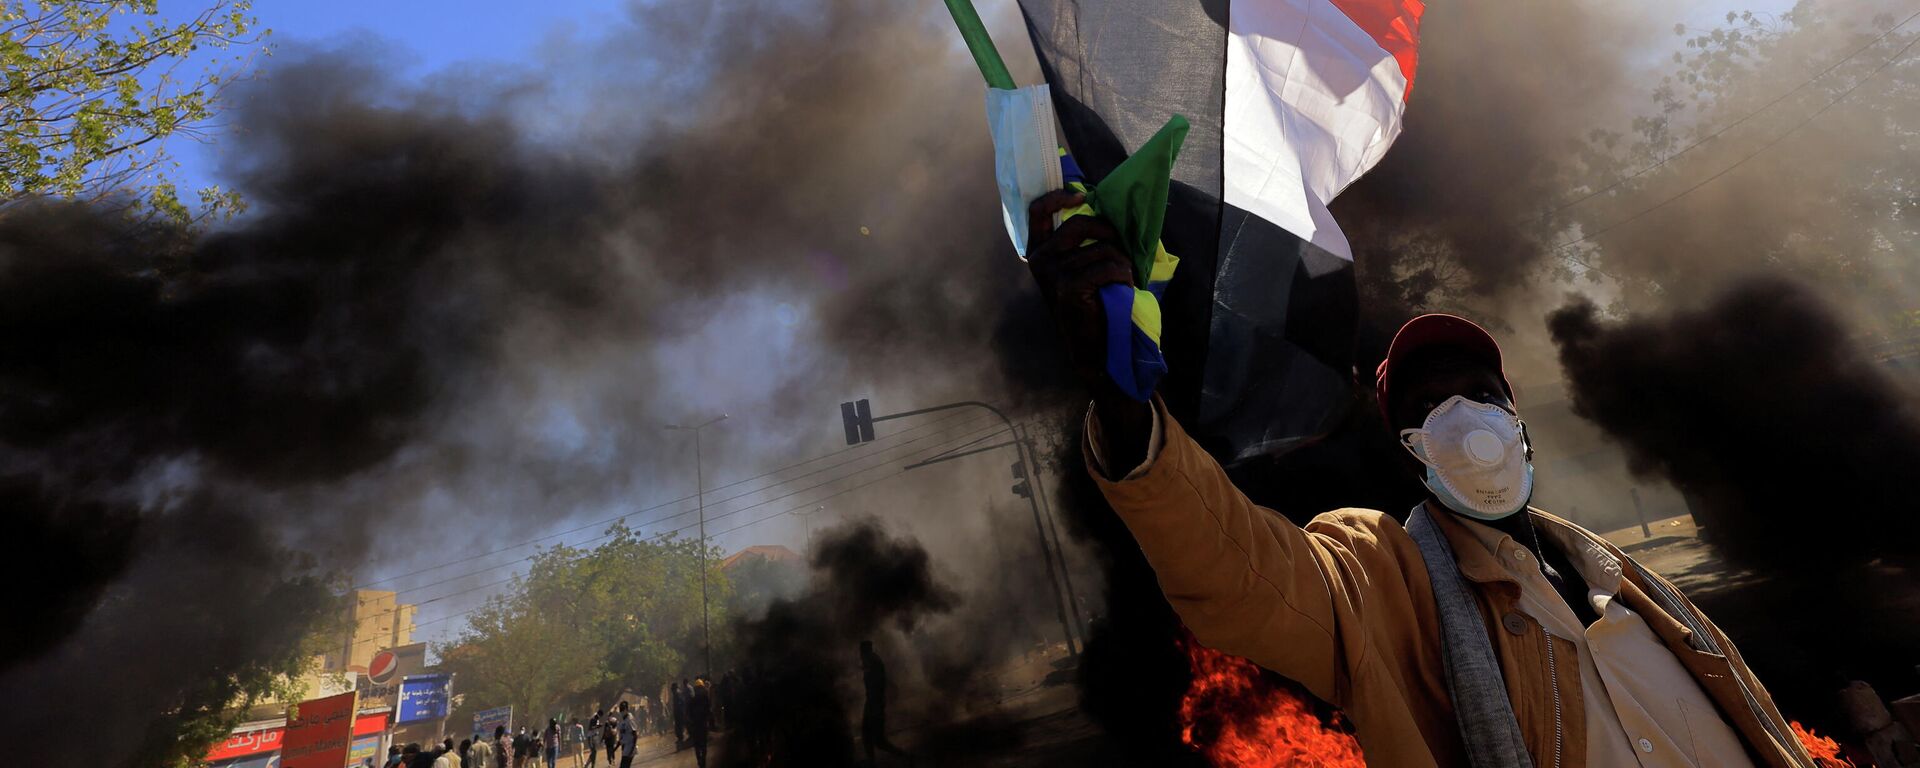 متظاهر في السودان يرفع علم بلاده أثناء احتجاجات الجمعة 31 ديسمبر  - سبوتنيك عربي, 1920, 05.01.2022